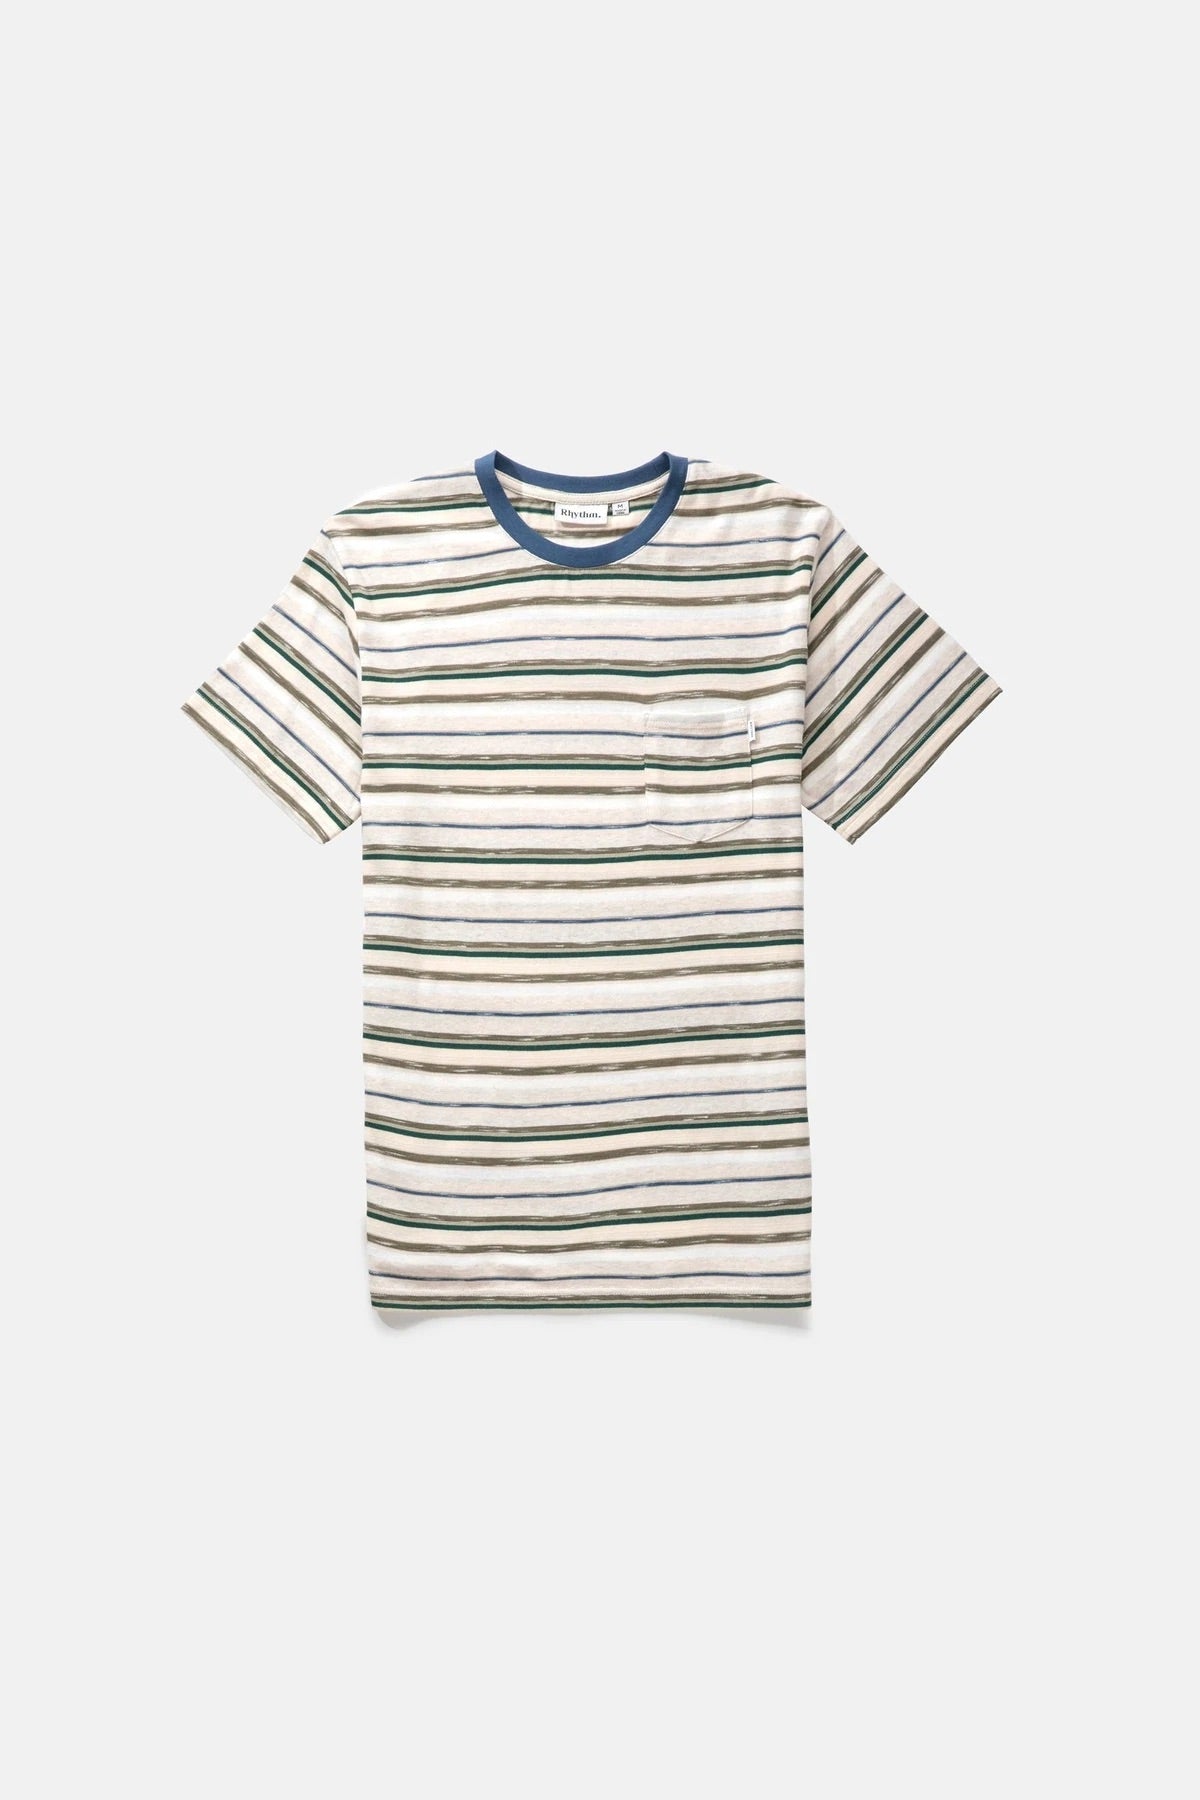 Rhythm Everyday Stripe SS T-shirt